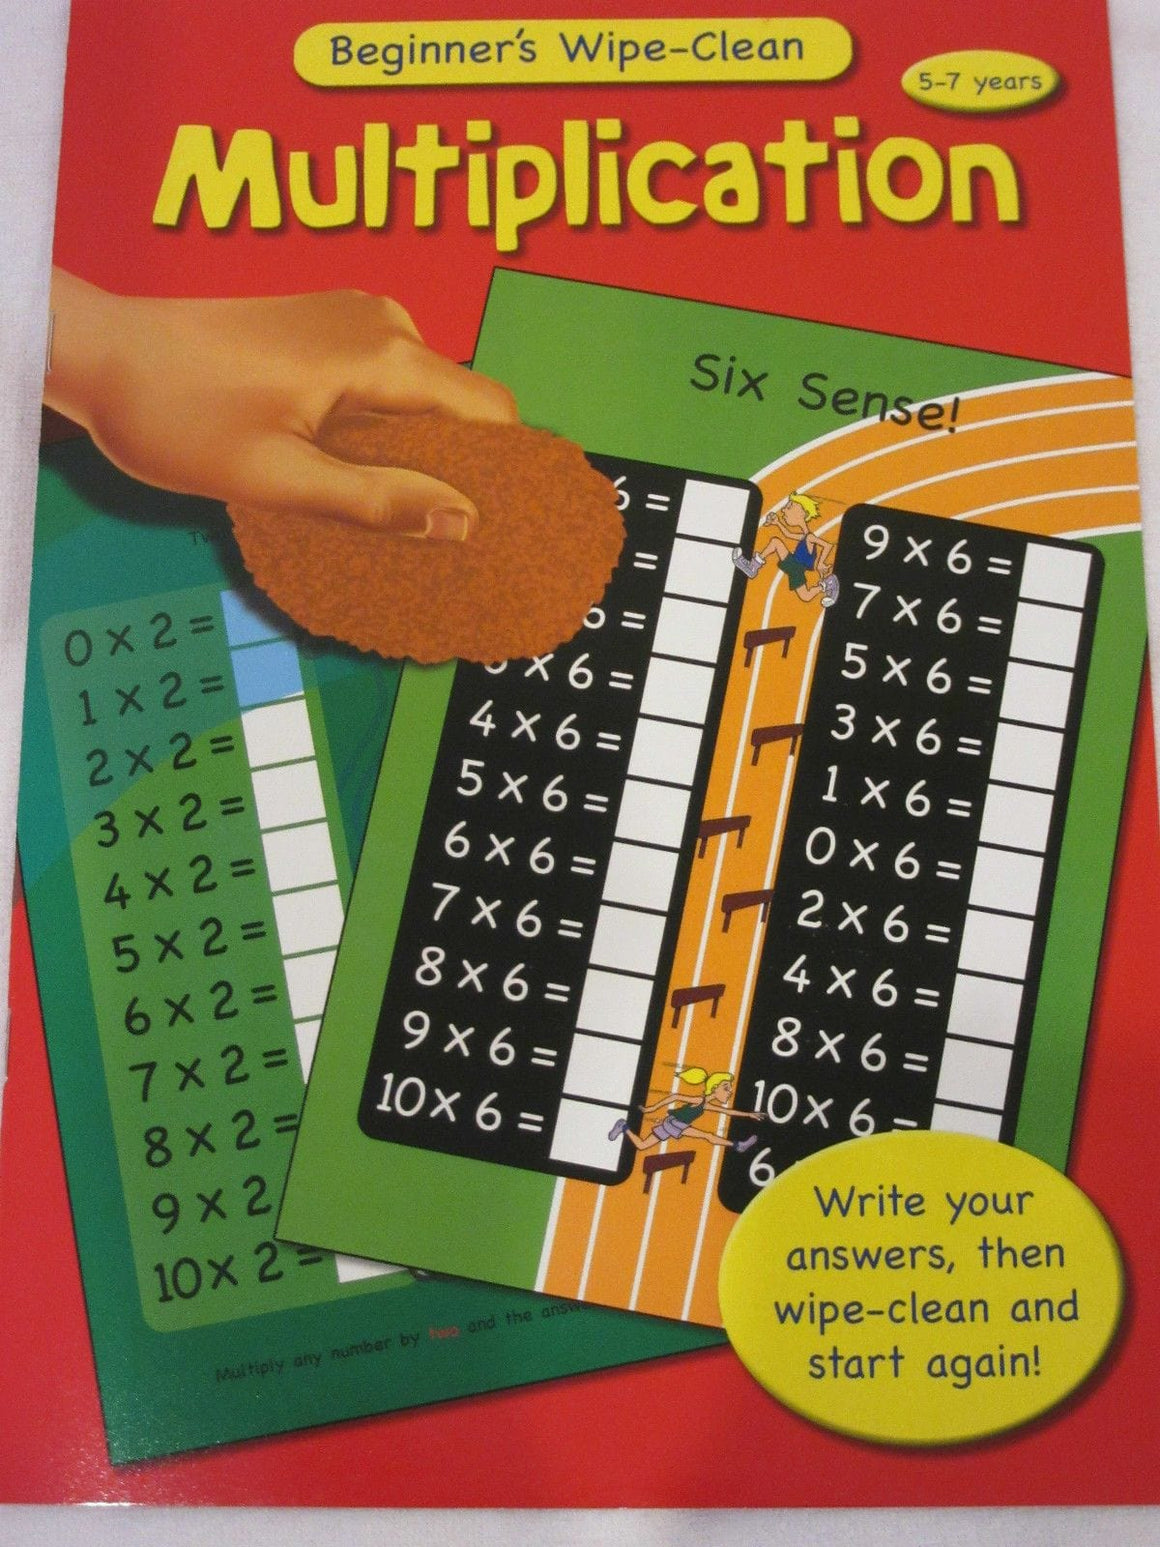 Wipe Clean Educational Book - Multiplication 5-7 years